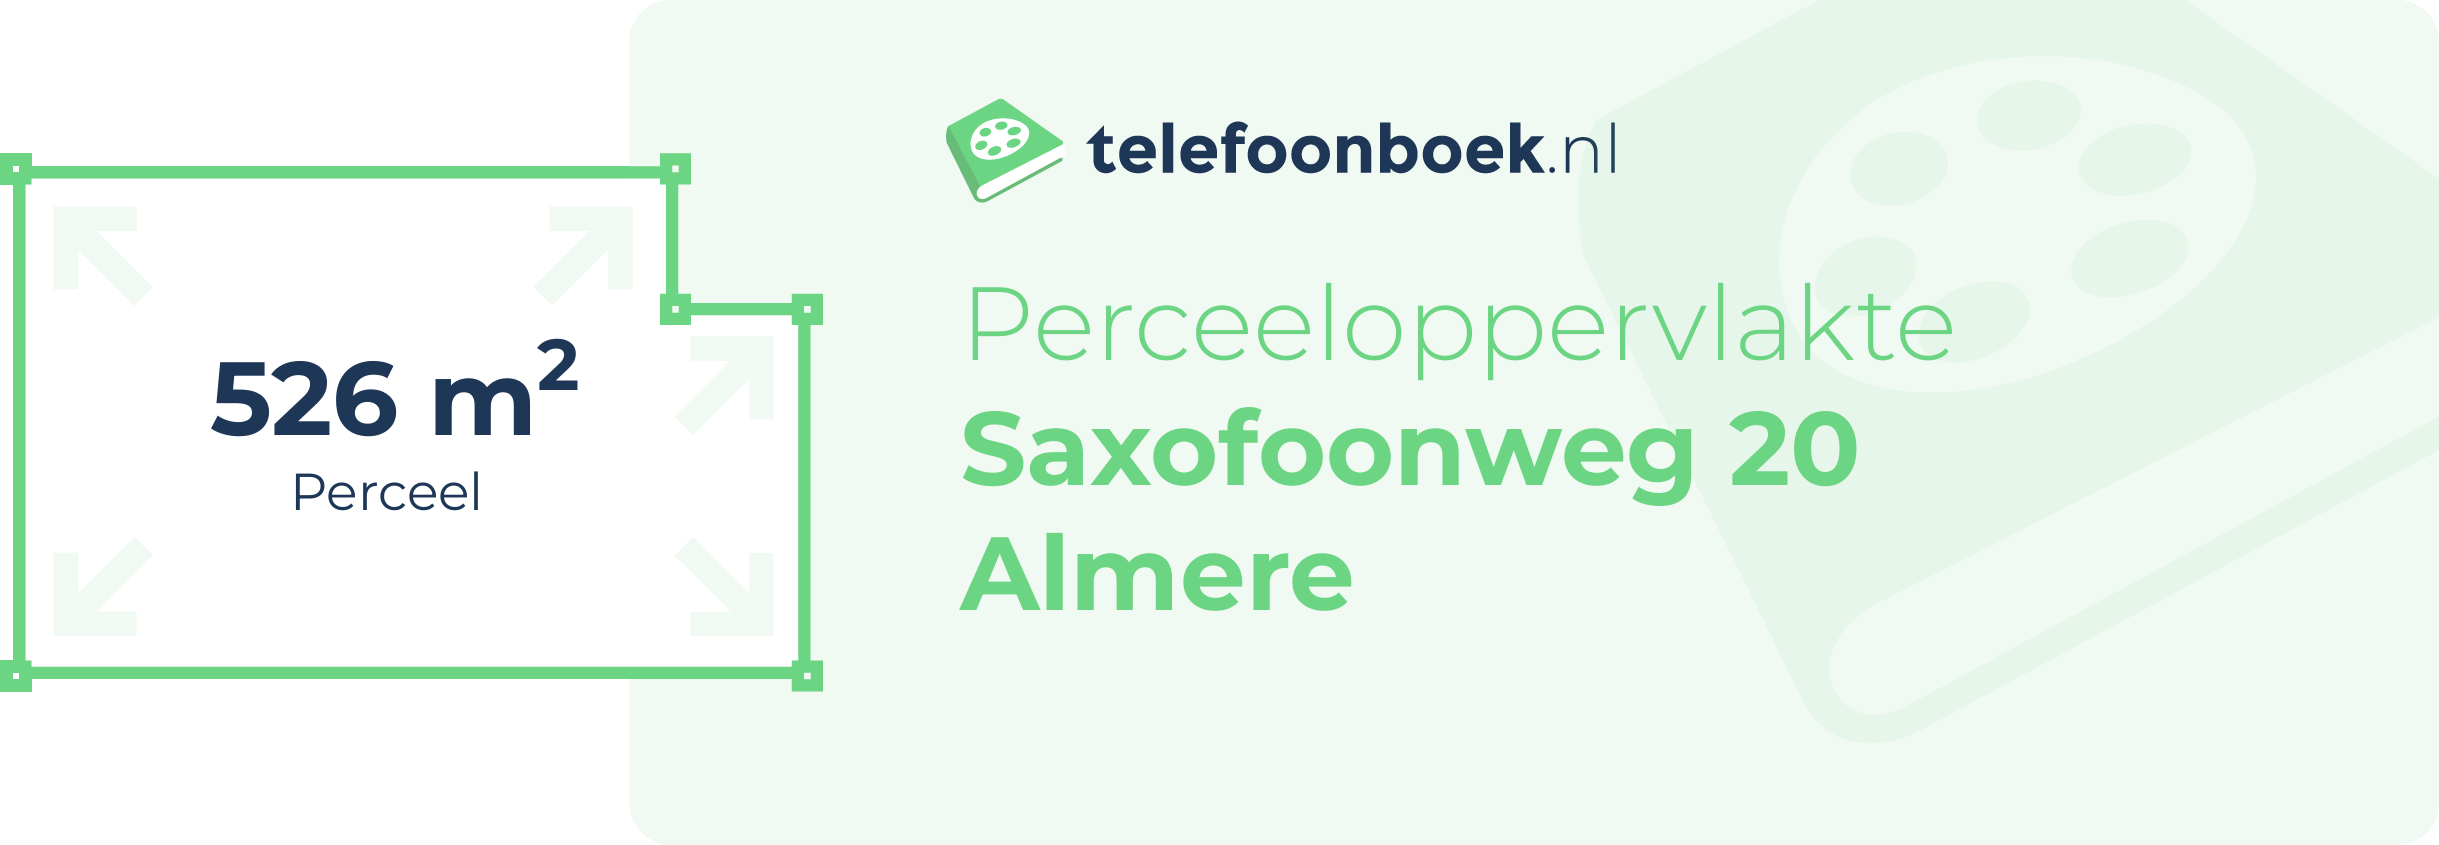 Perceeloppervlakte Saxofoonweg 20 Almere